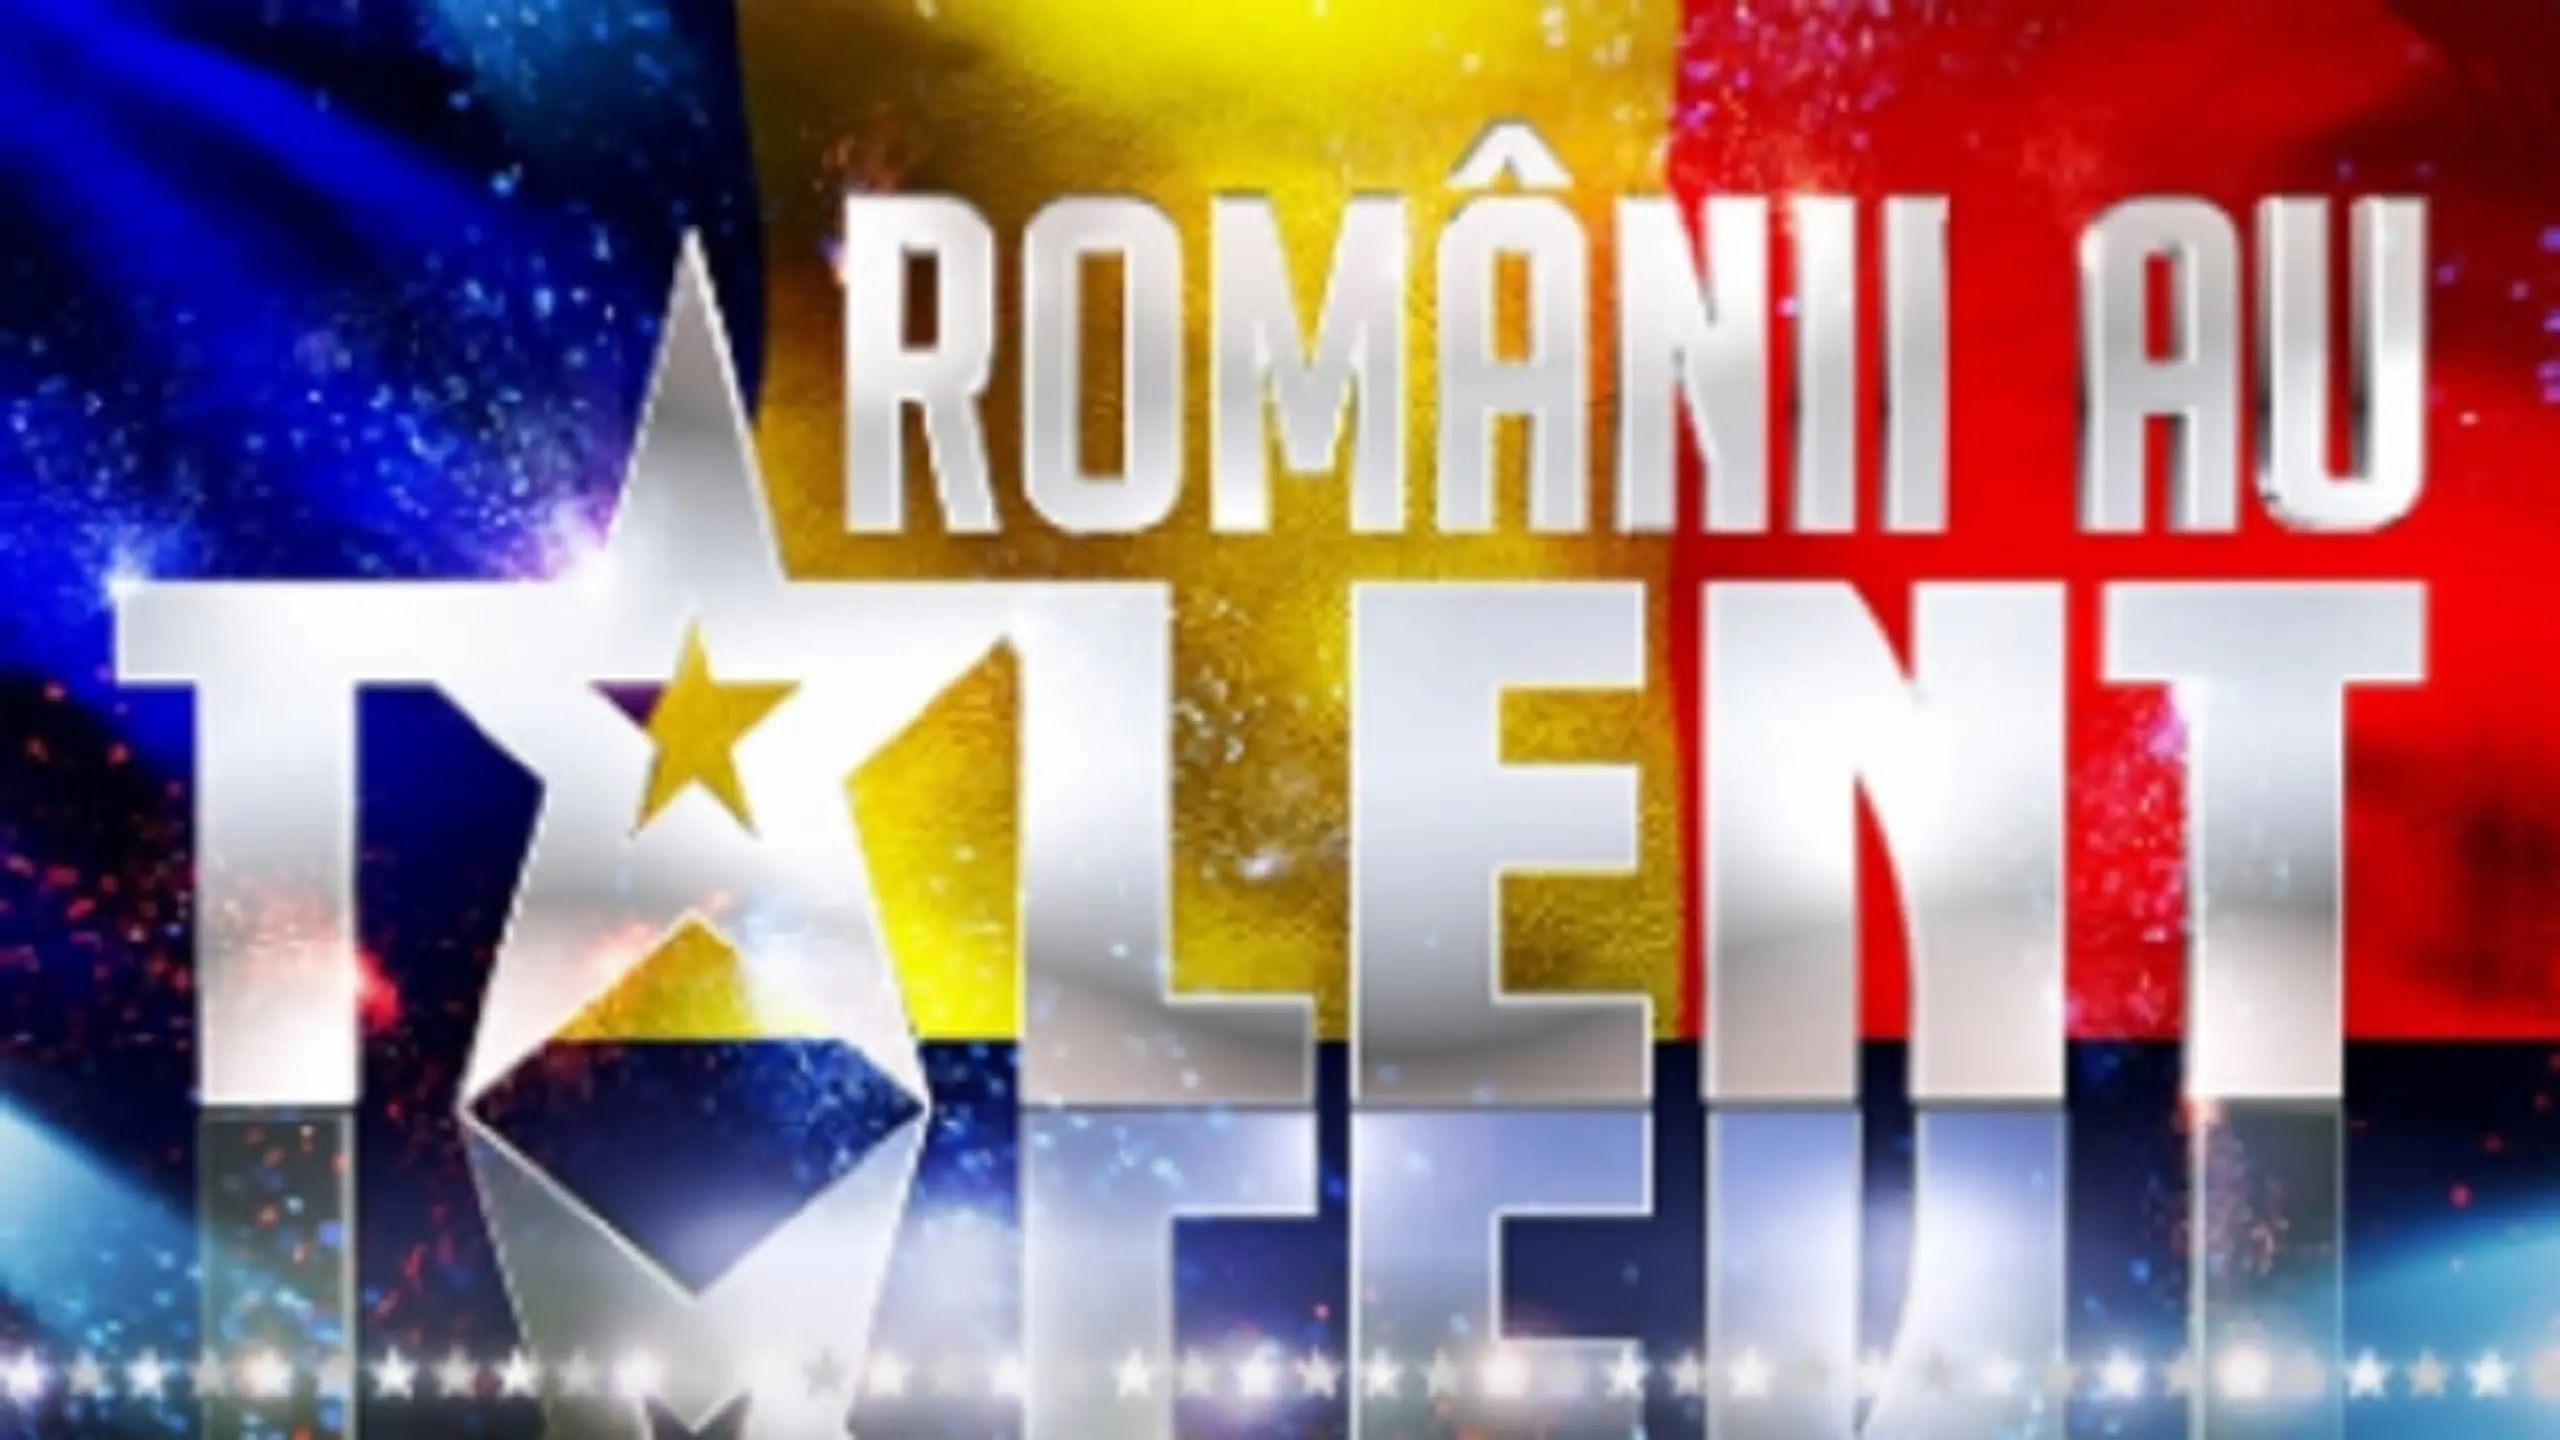 Românii au talent